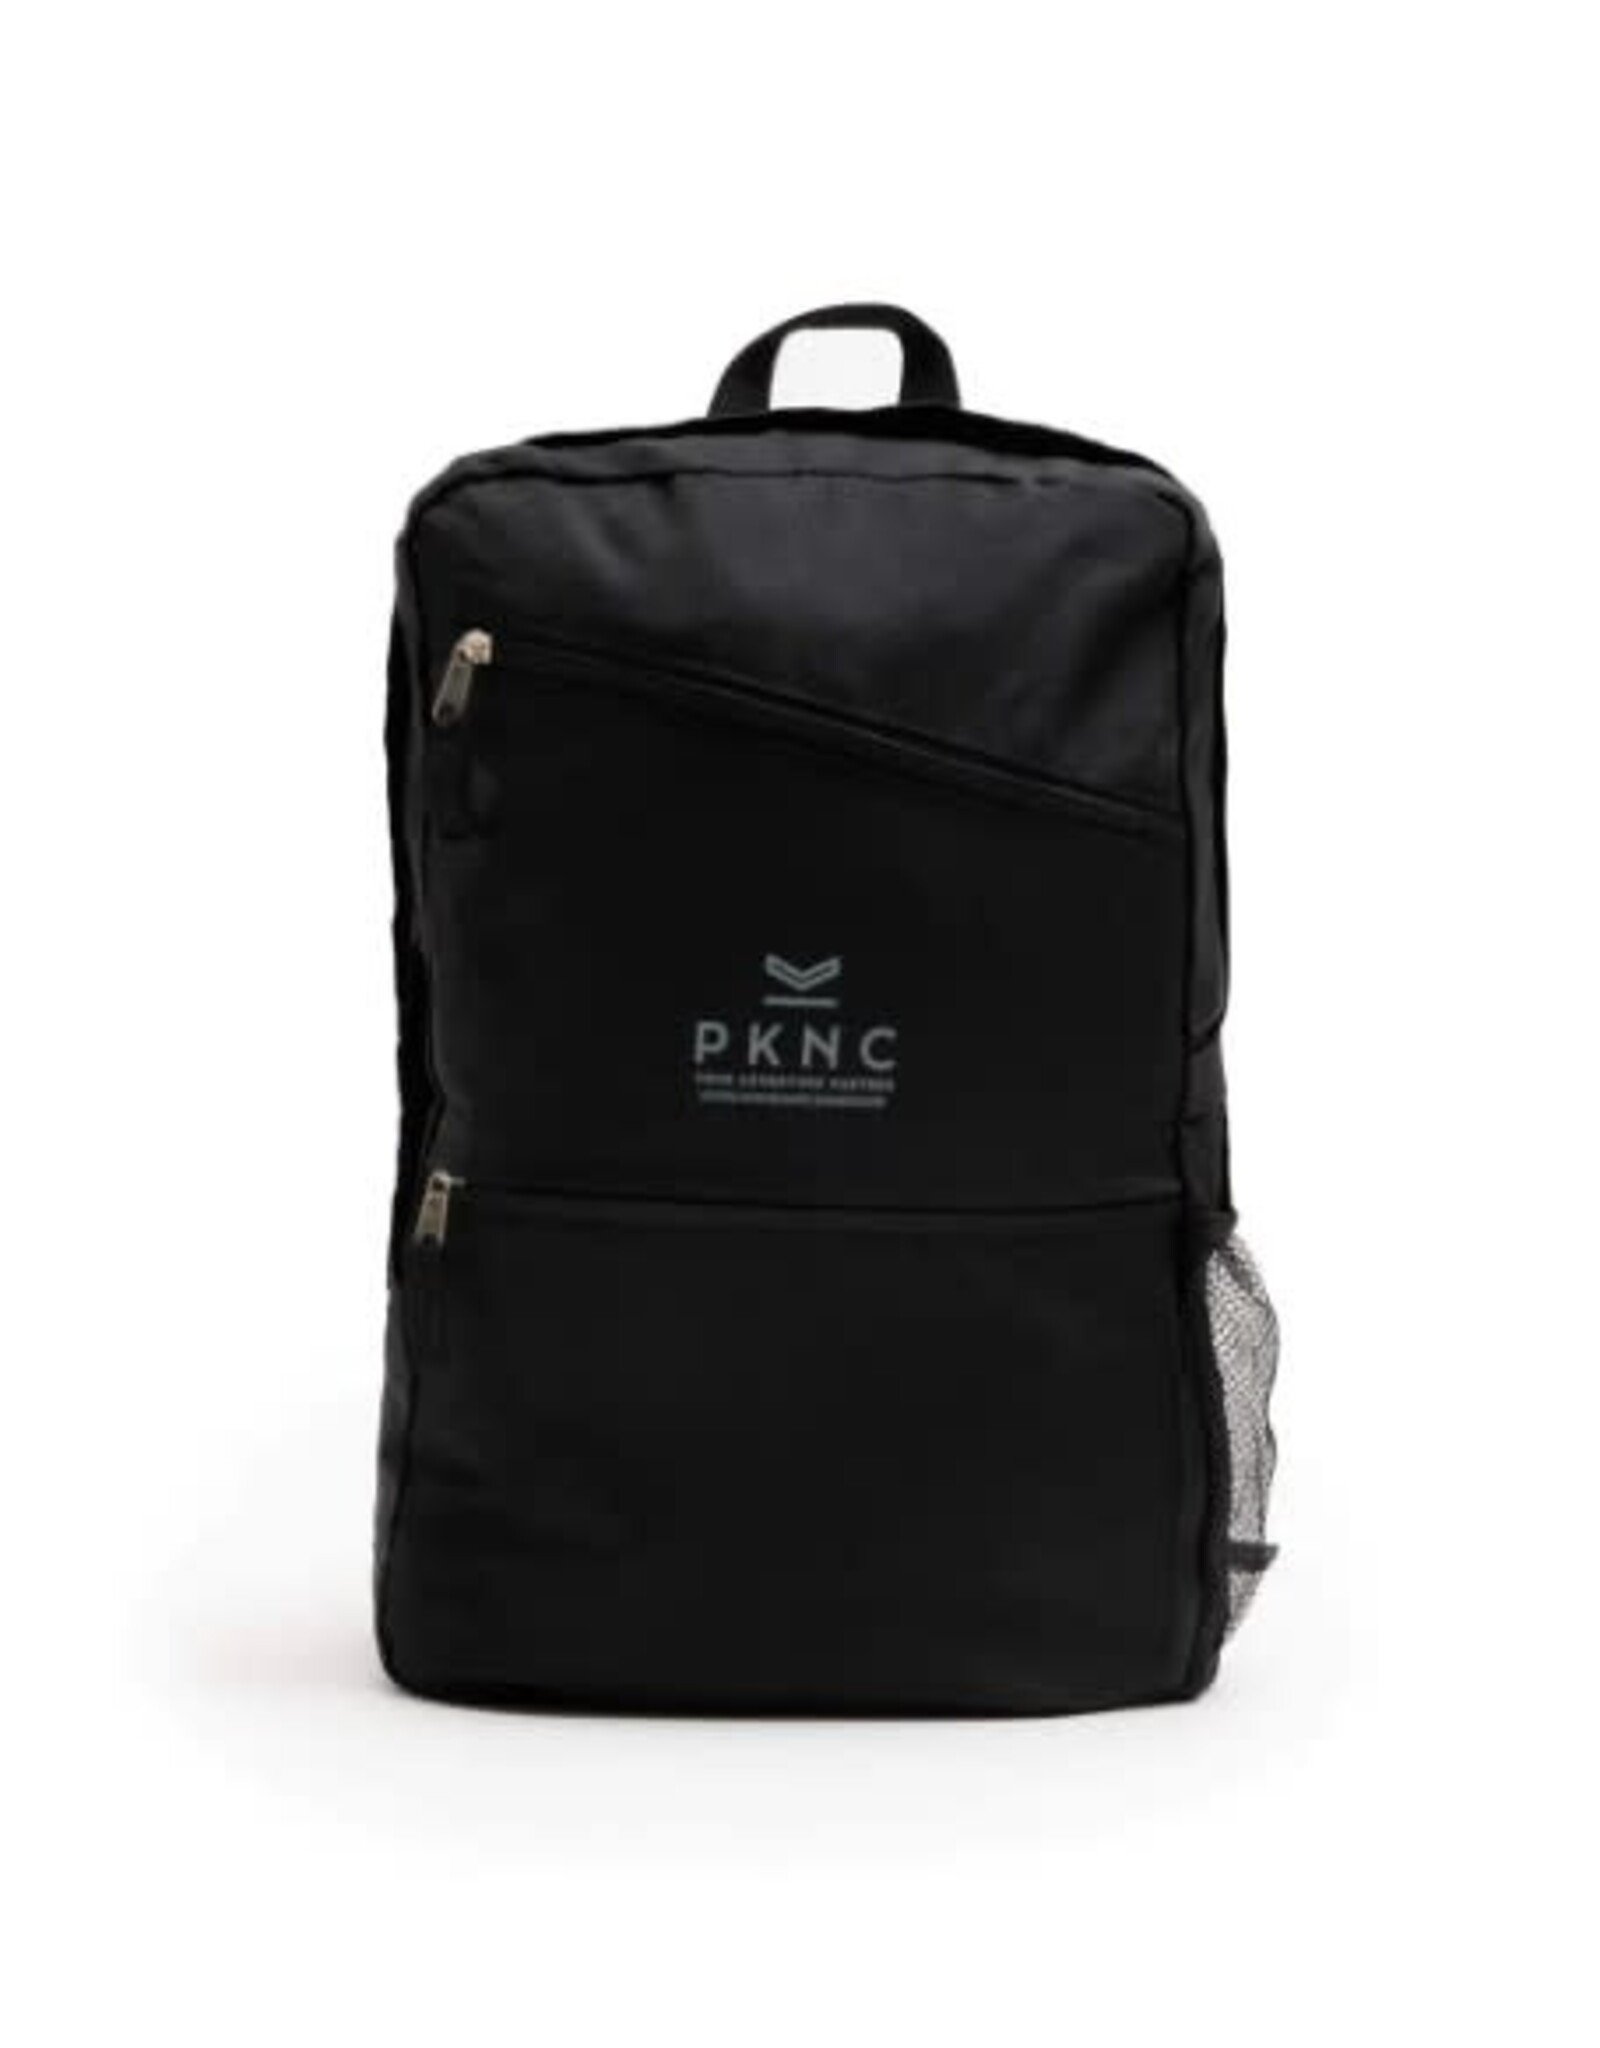 PKNC Sac de voyage Pack N Carry 18L pliable